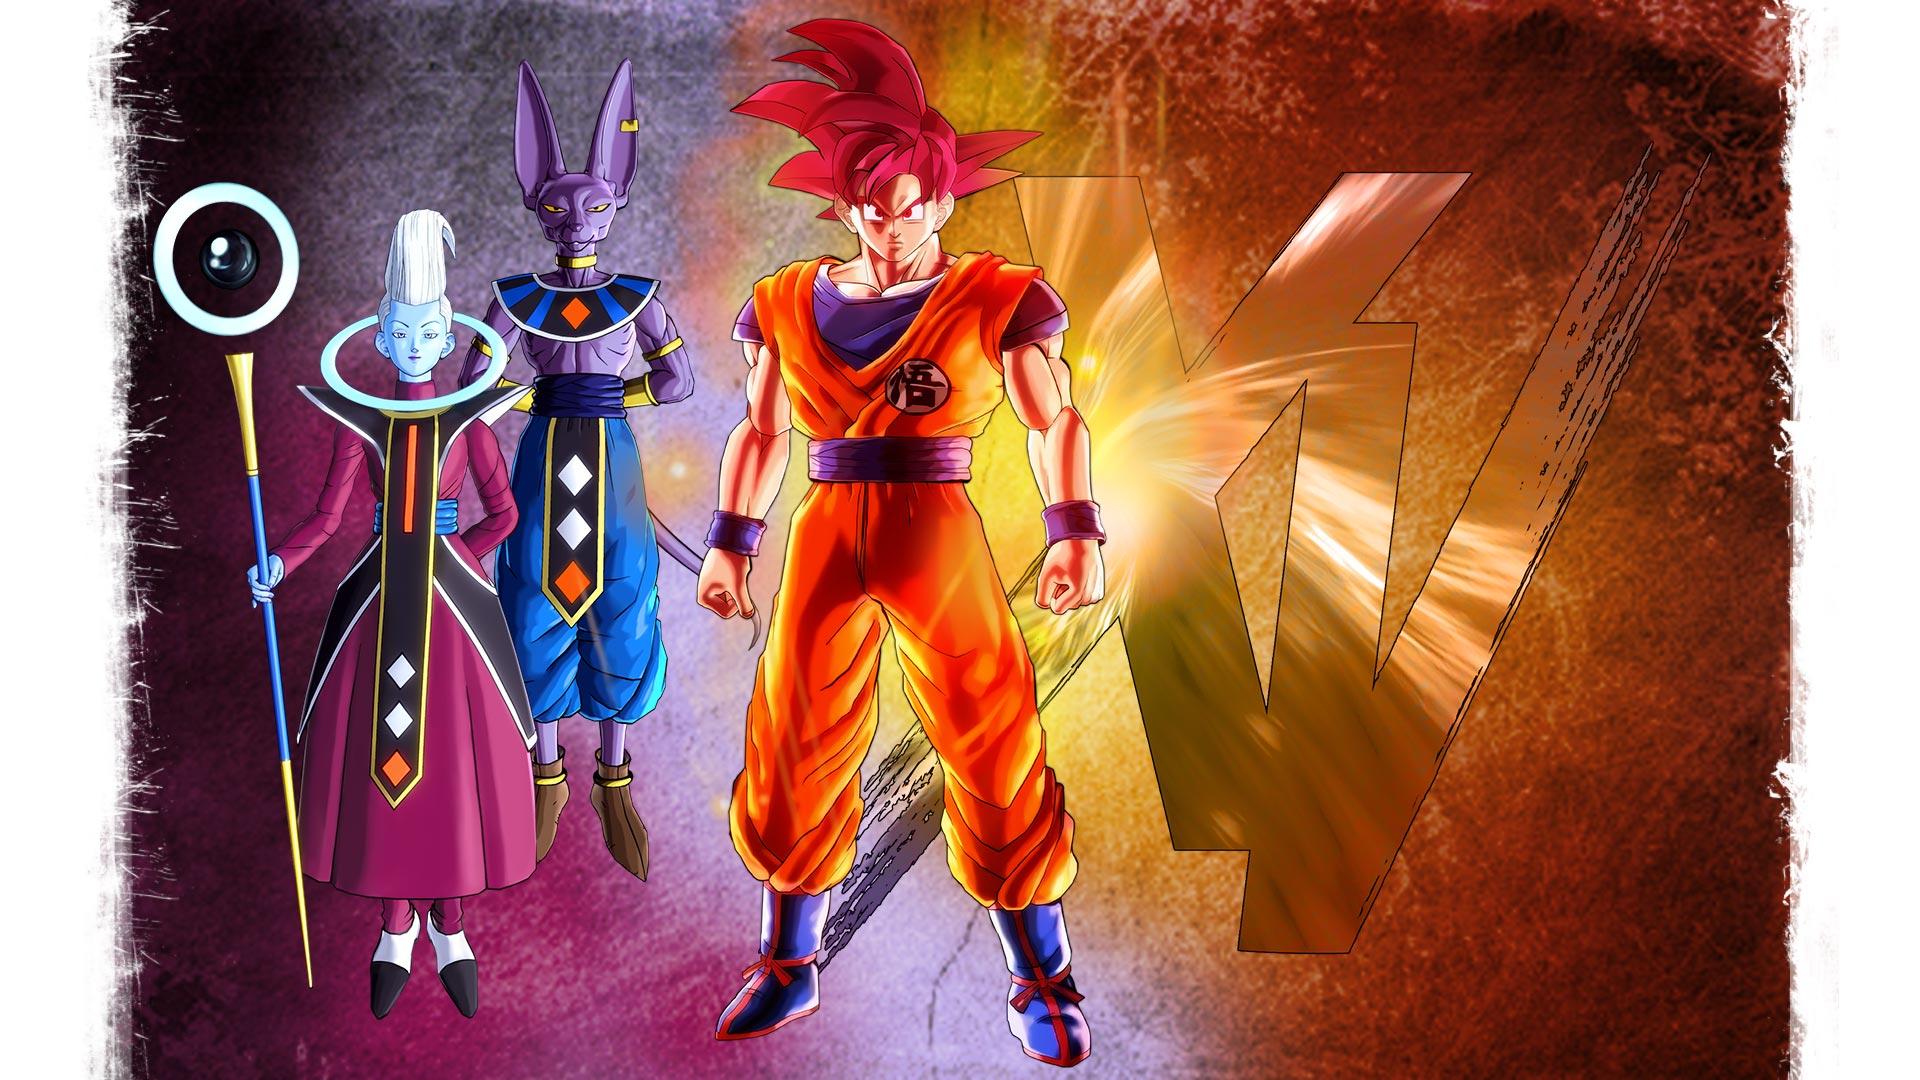 Dragon Ball Xenoverse Wallpaper 009 Goku. Wallpaper Ethereal Games